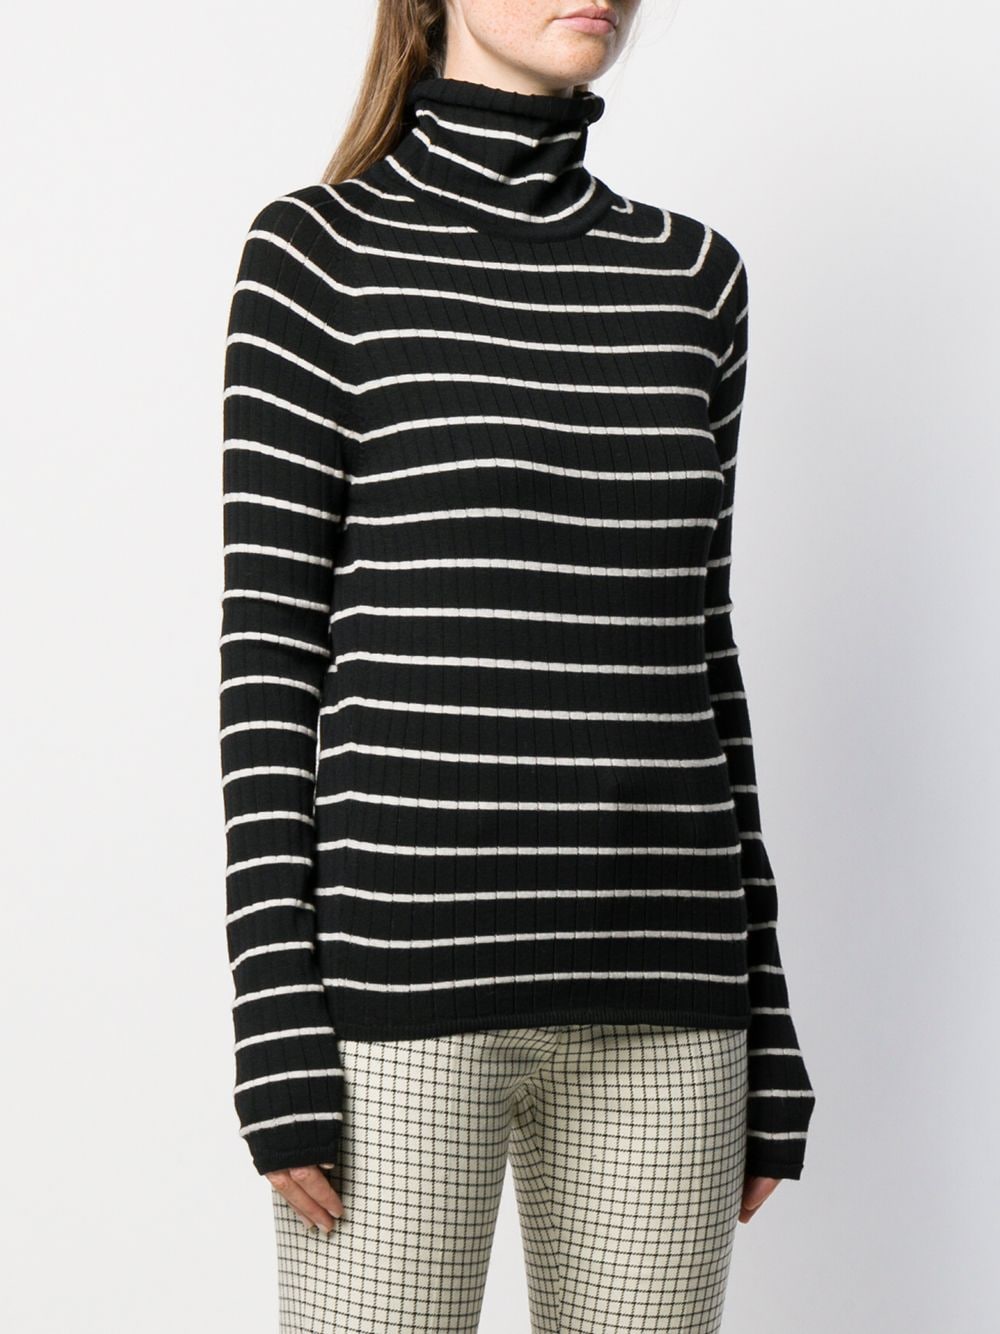 AMI Paris Turtleneck Striped Sweater - Farfetch